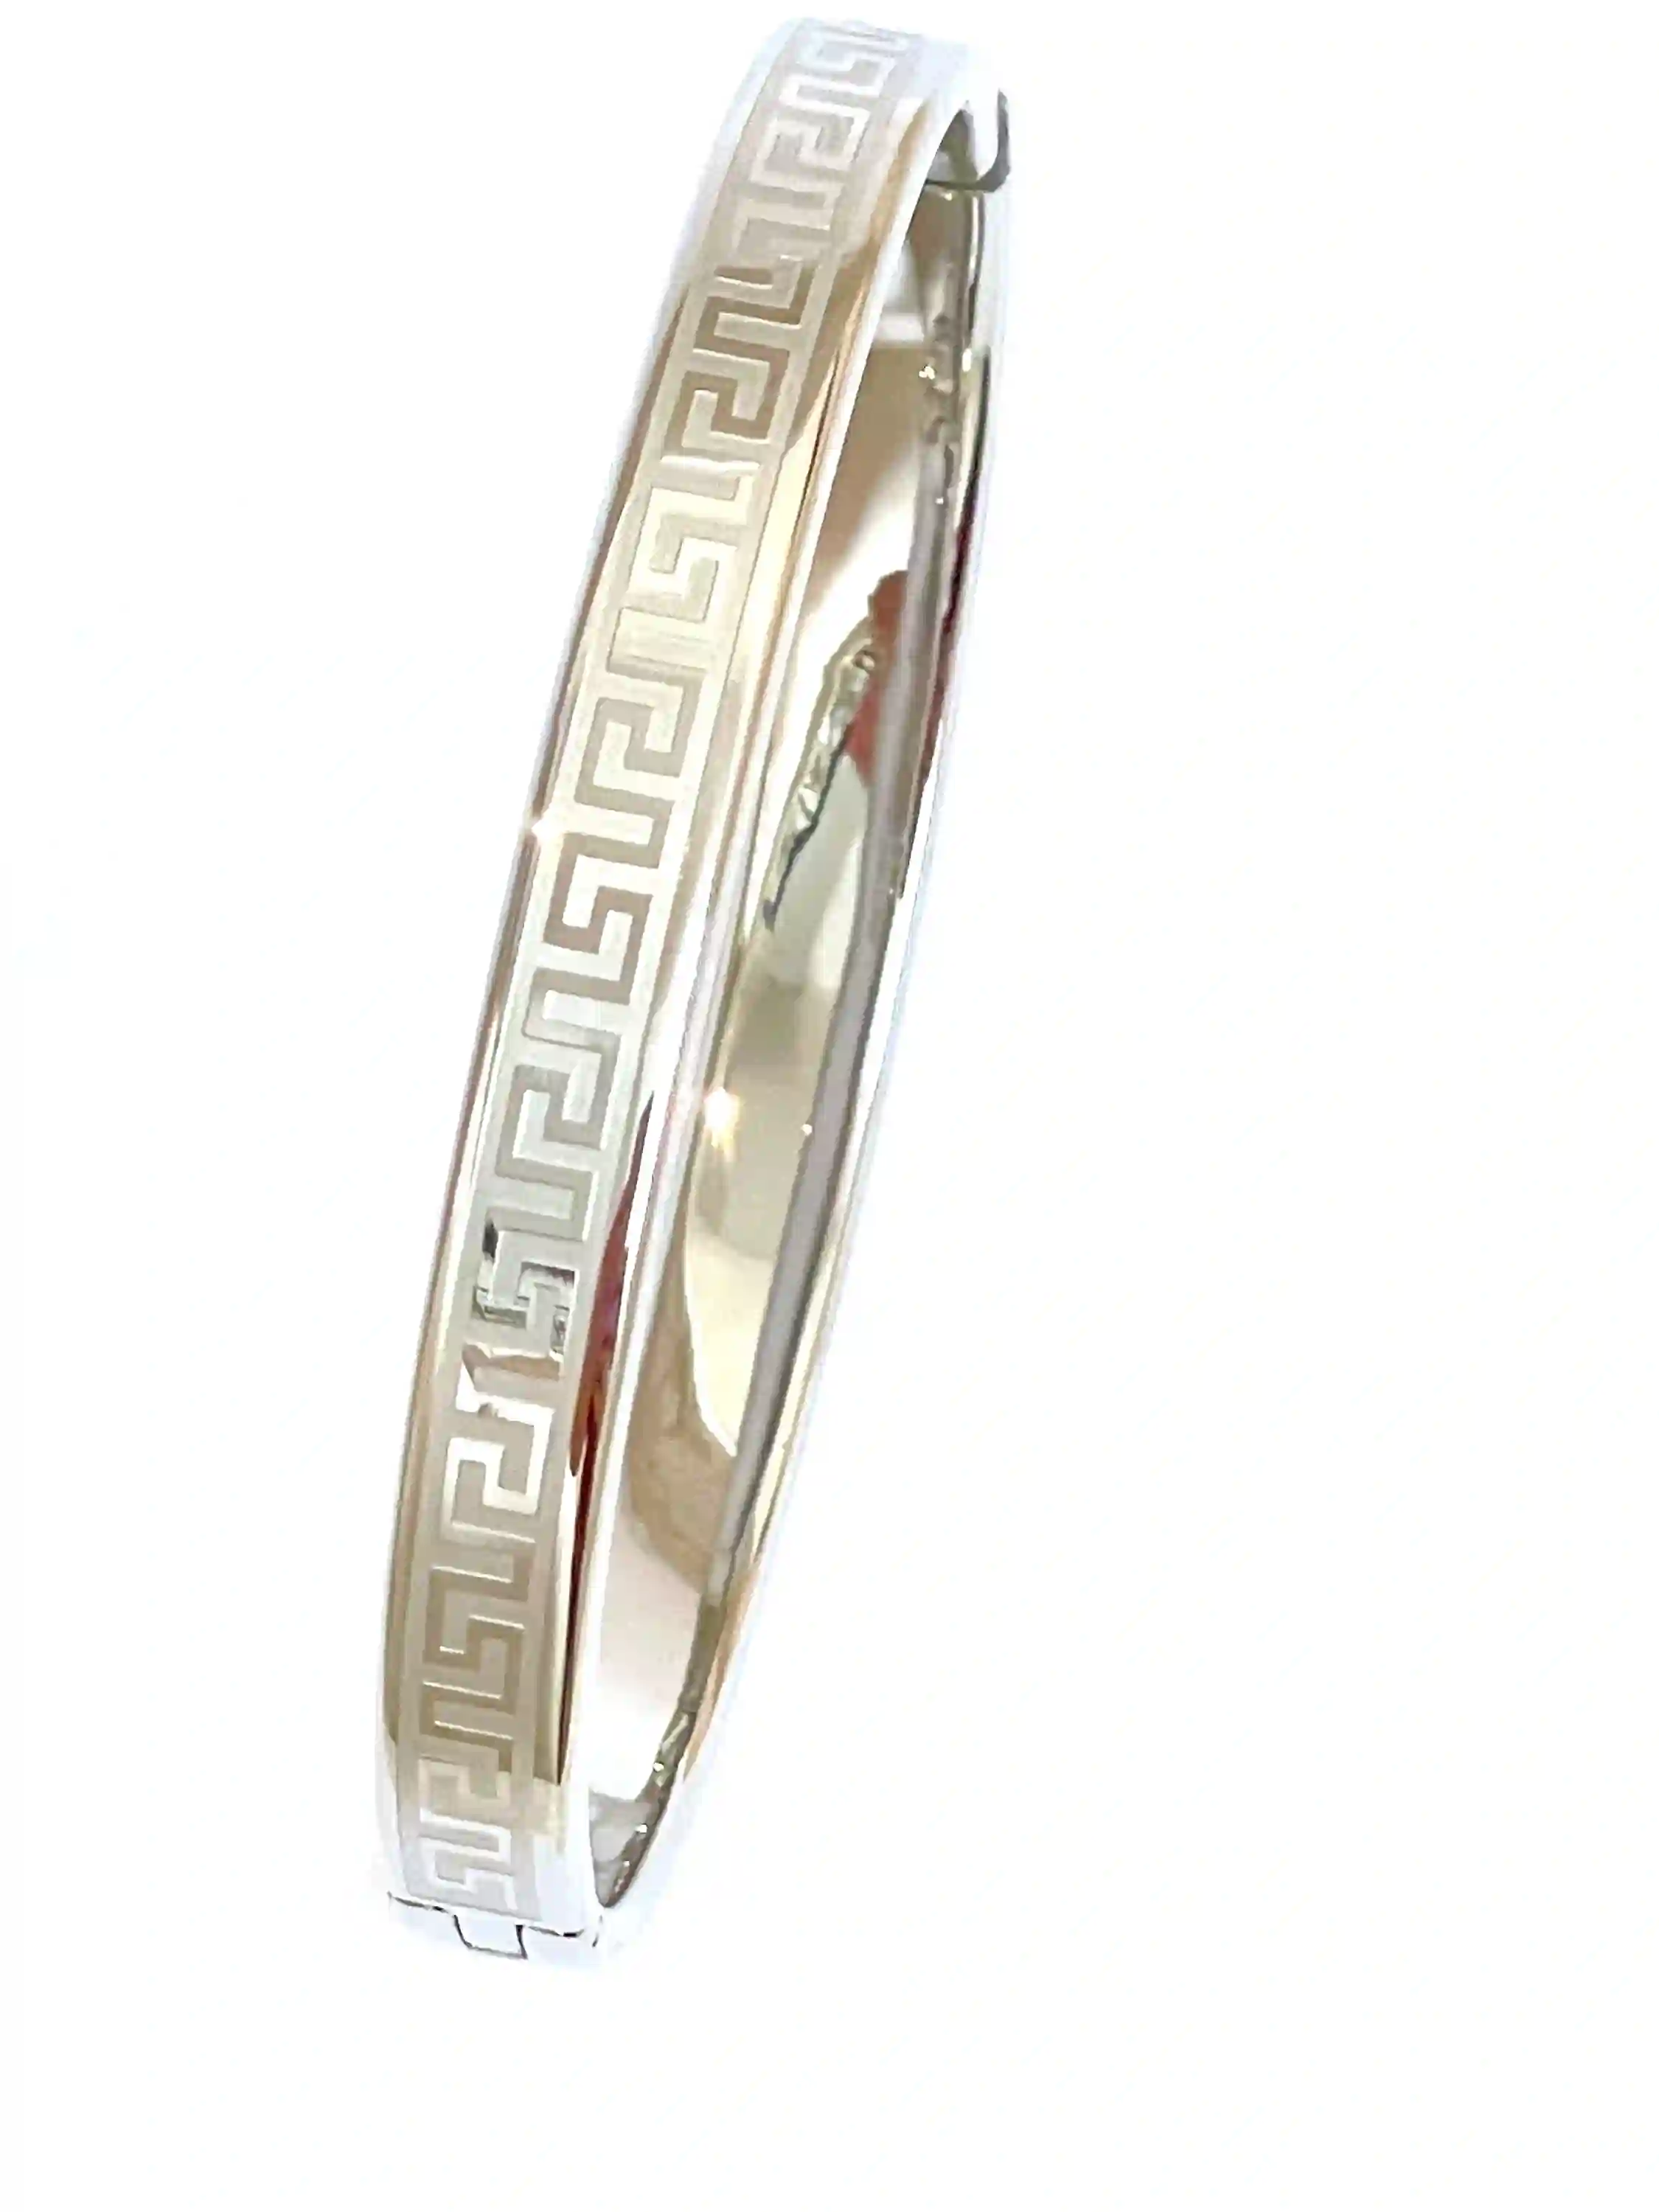 GREEK Key bracelet bangle Jewellery/Greek Jewelry 24k GOLD Meander Bracelet Silver Anniversary GIFT for Wife Women Friend Mother Girlfriend 